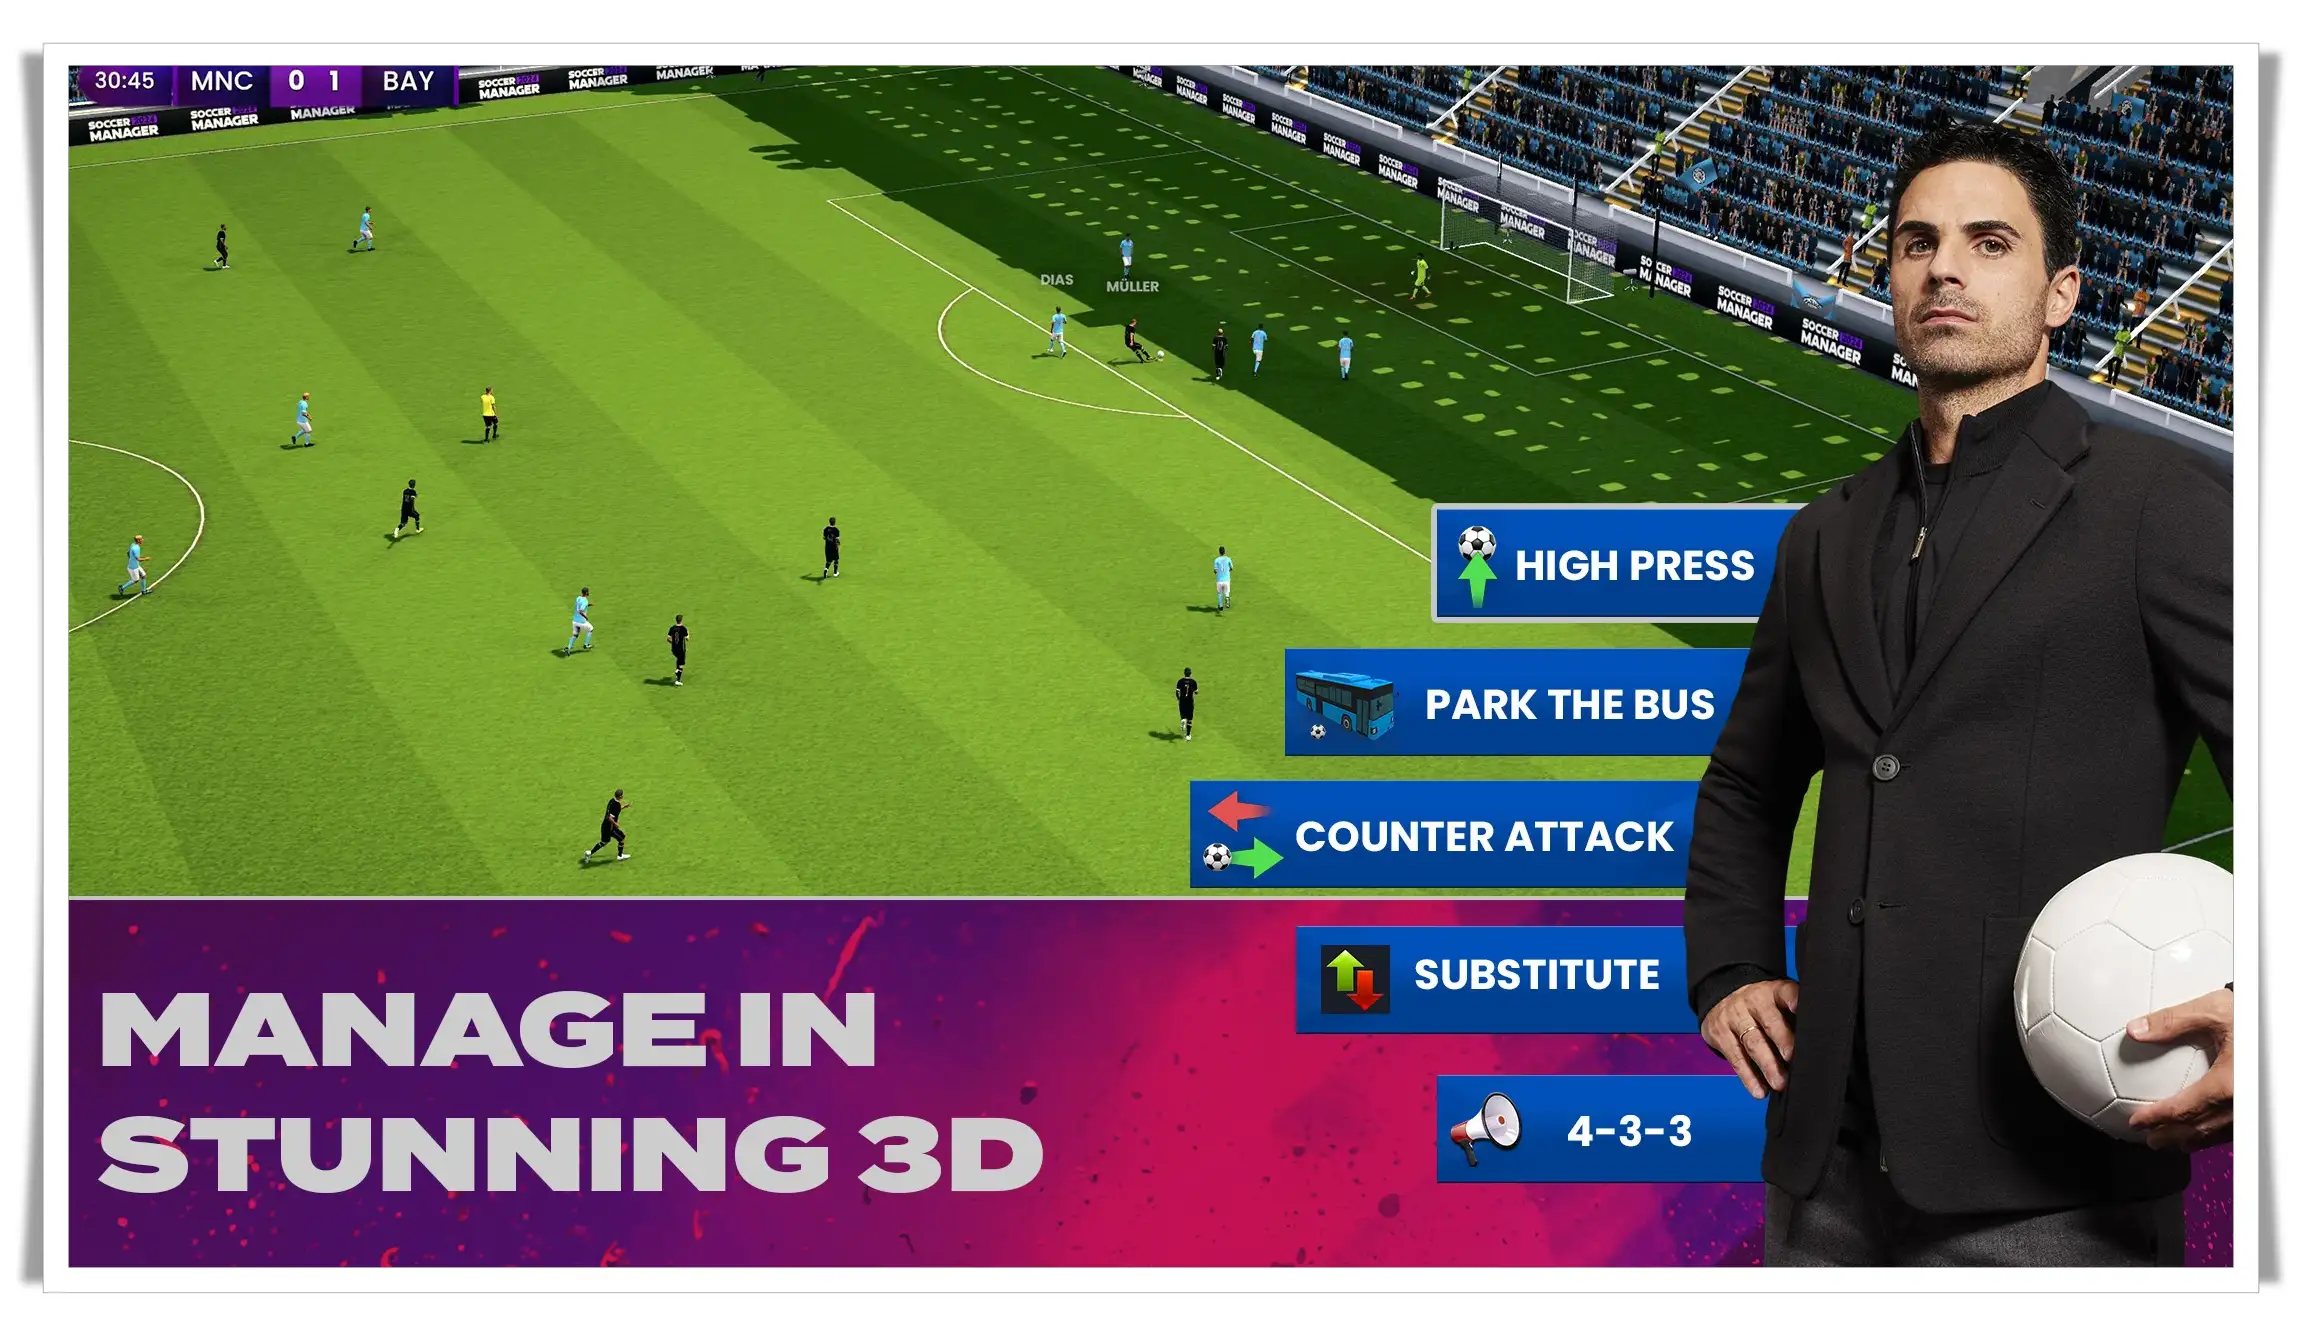 Soccer Manager 2024 Mod Apk v2.0.1(No Ads Free Rewards) Download